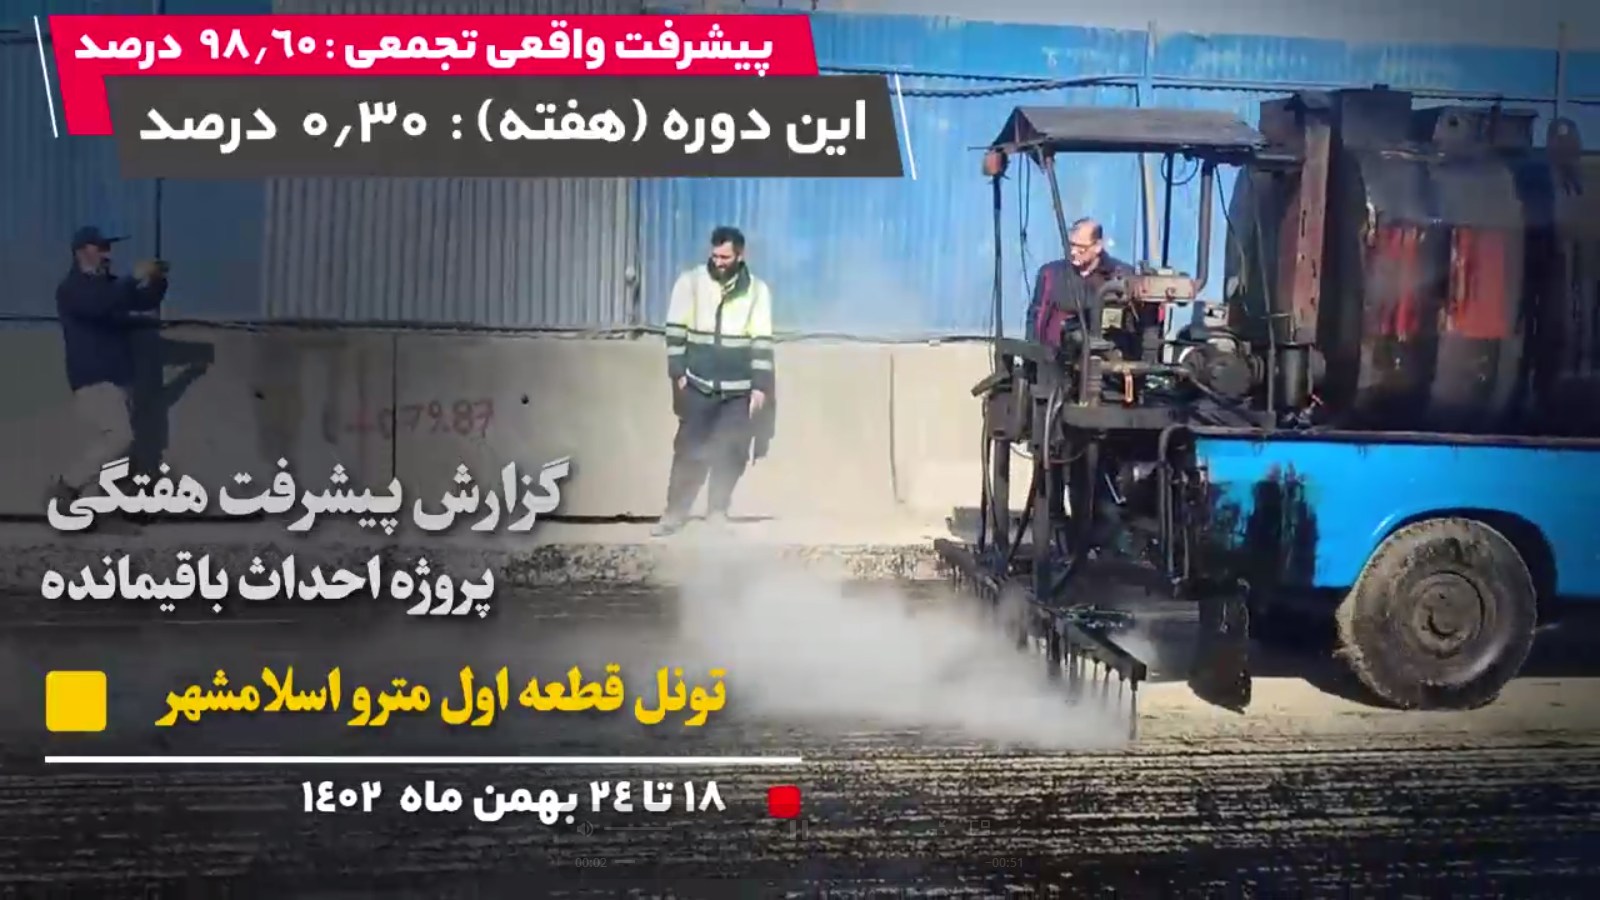 گزارش هفتگی پیشرفت پروژه احداث باقیمانده تونل قطعه اول مترو اسلامشهر مورخ 18  الی 24 بهمن ماه 1402 :